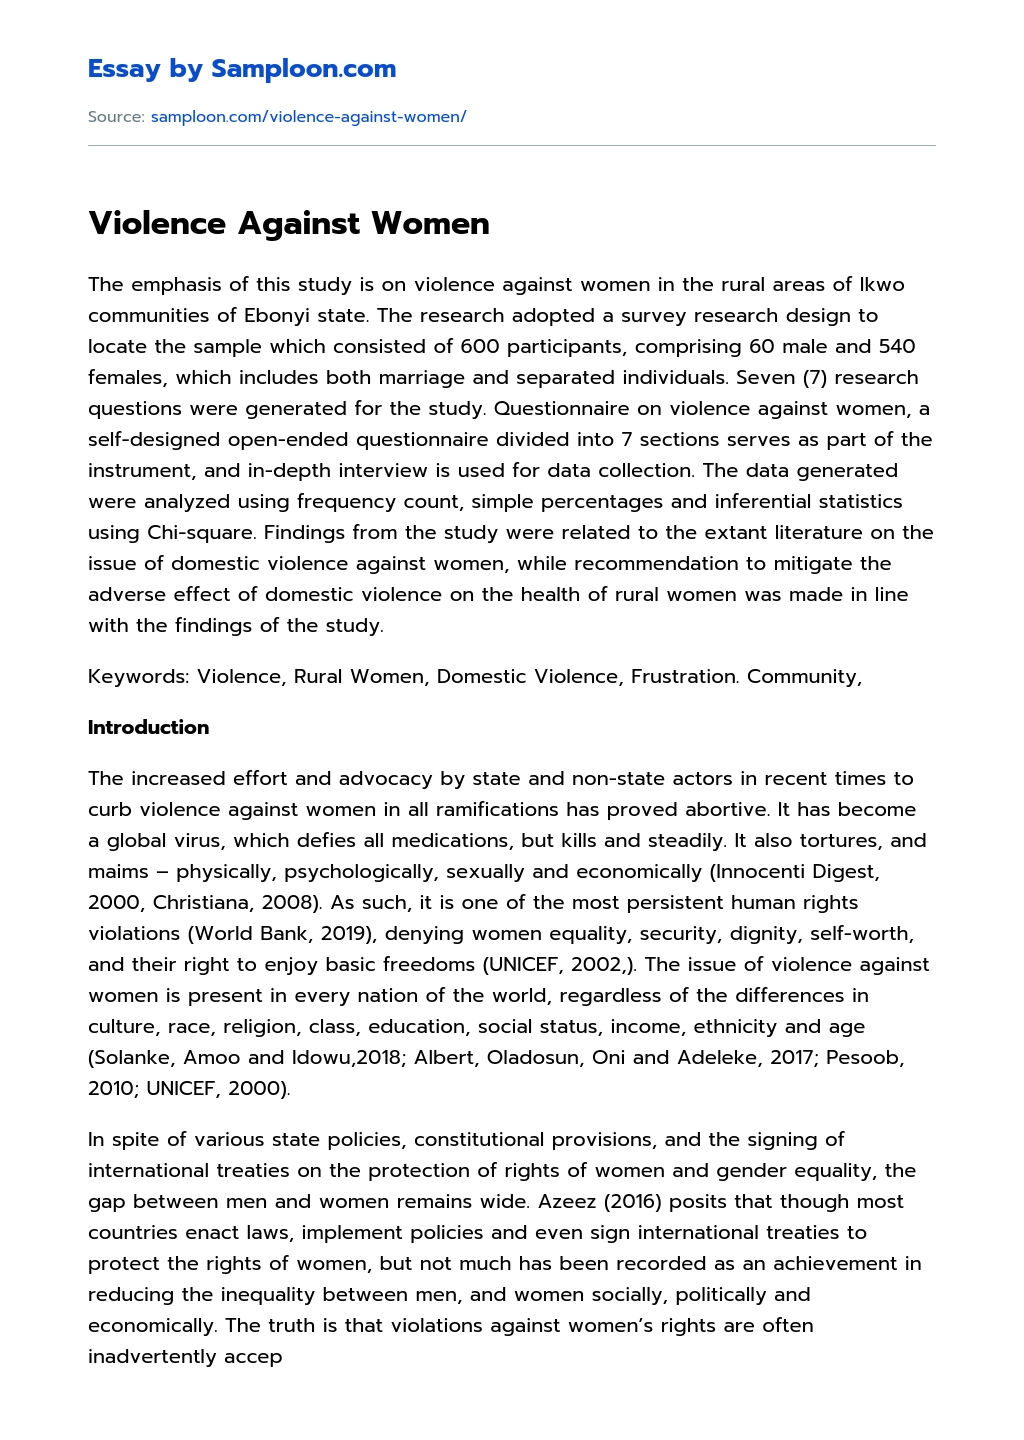 an essay about gender based violence